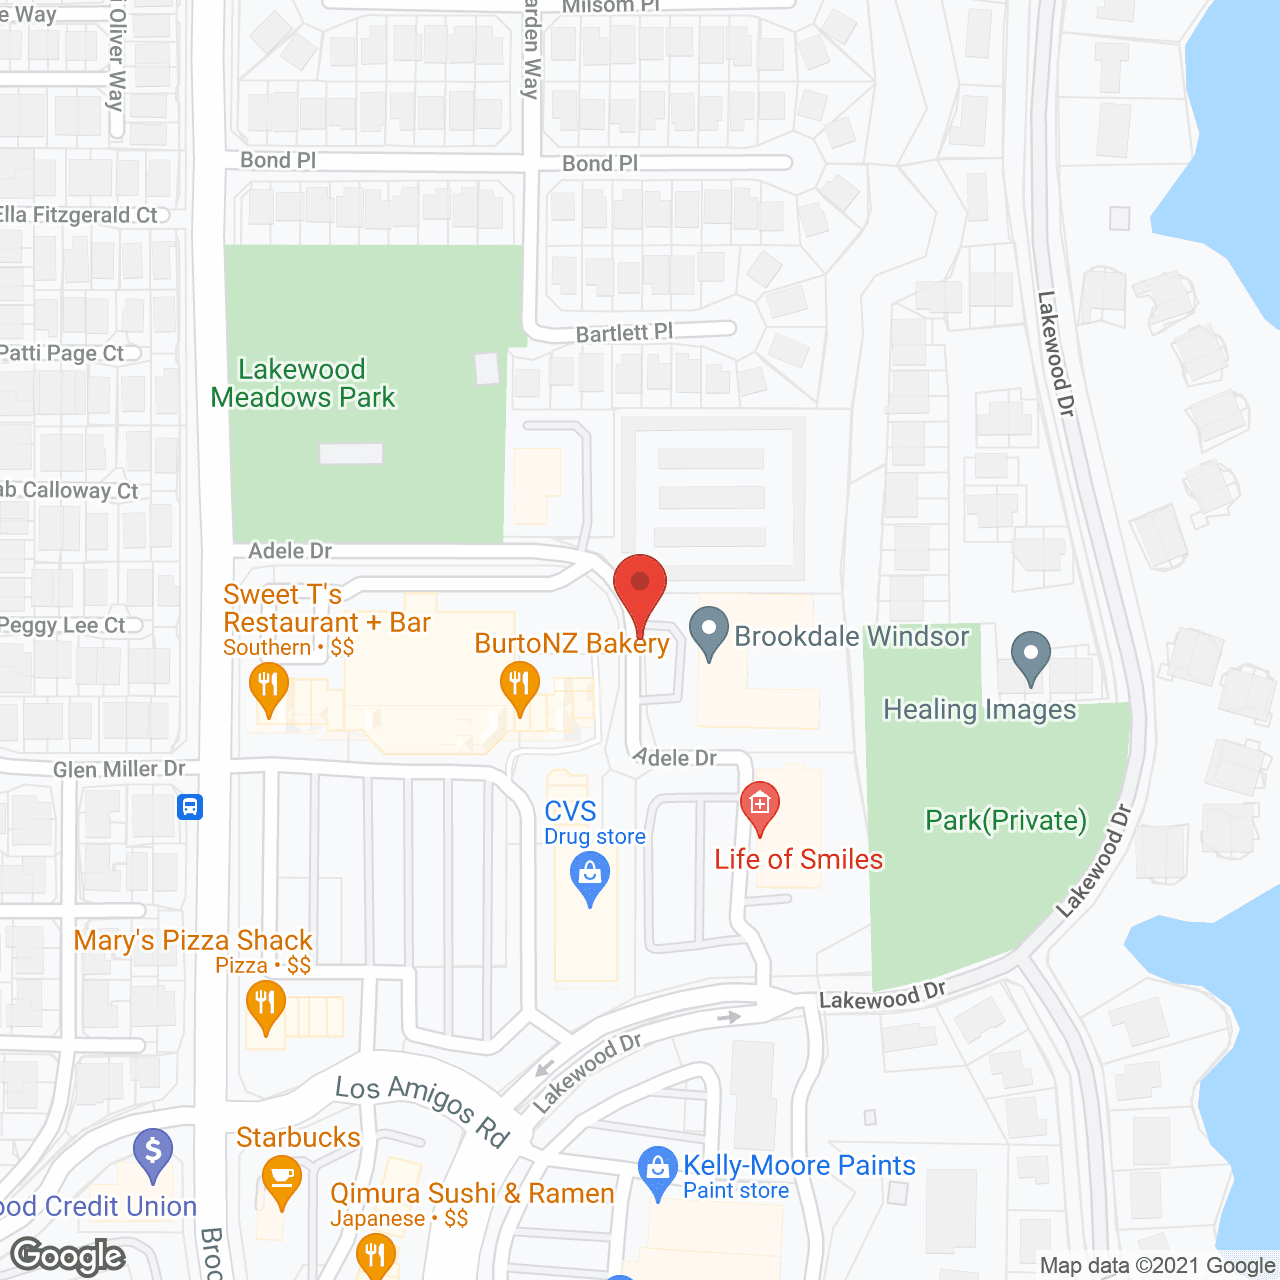 Brookdale Windsor in google map